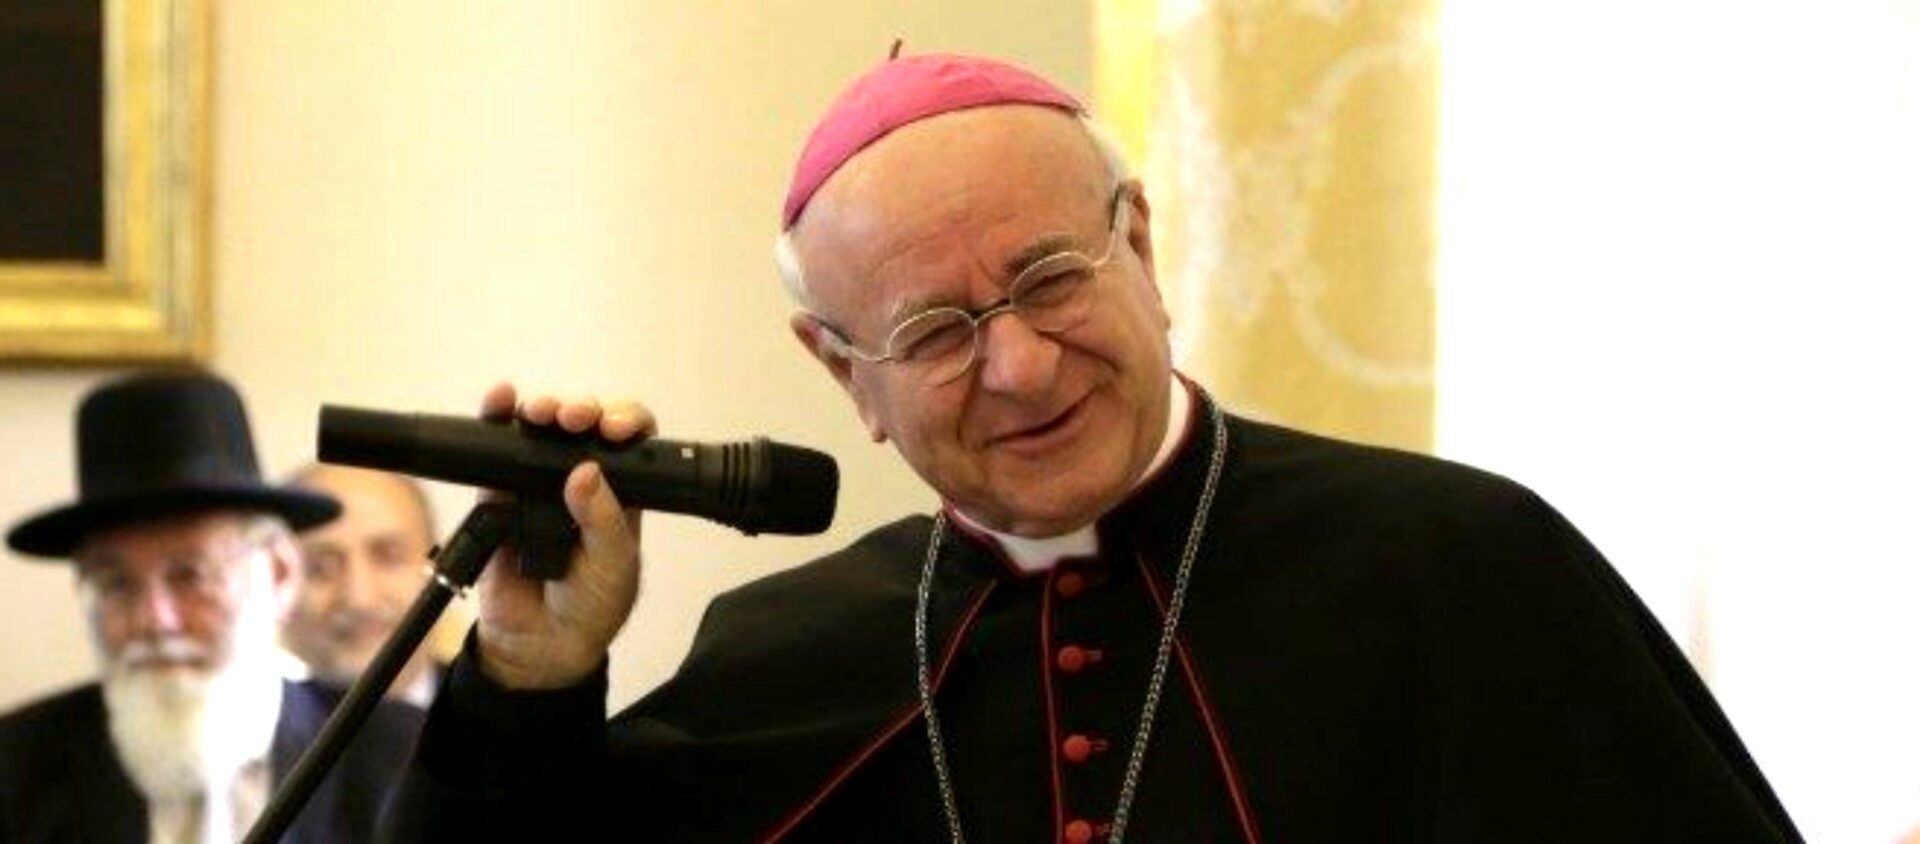 Mgr Vincenzo Paglia, président de l’Académie pontificale pour la vie | © Vatican Media